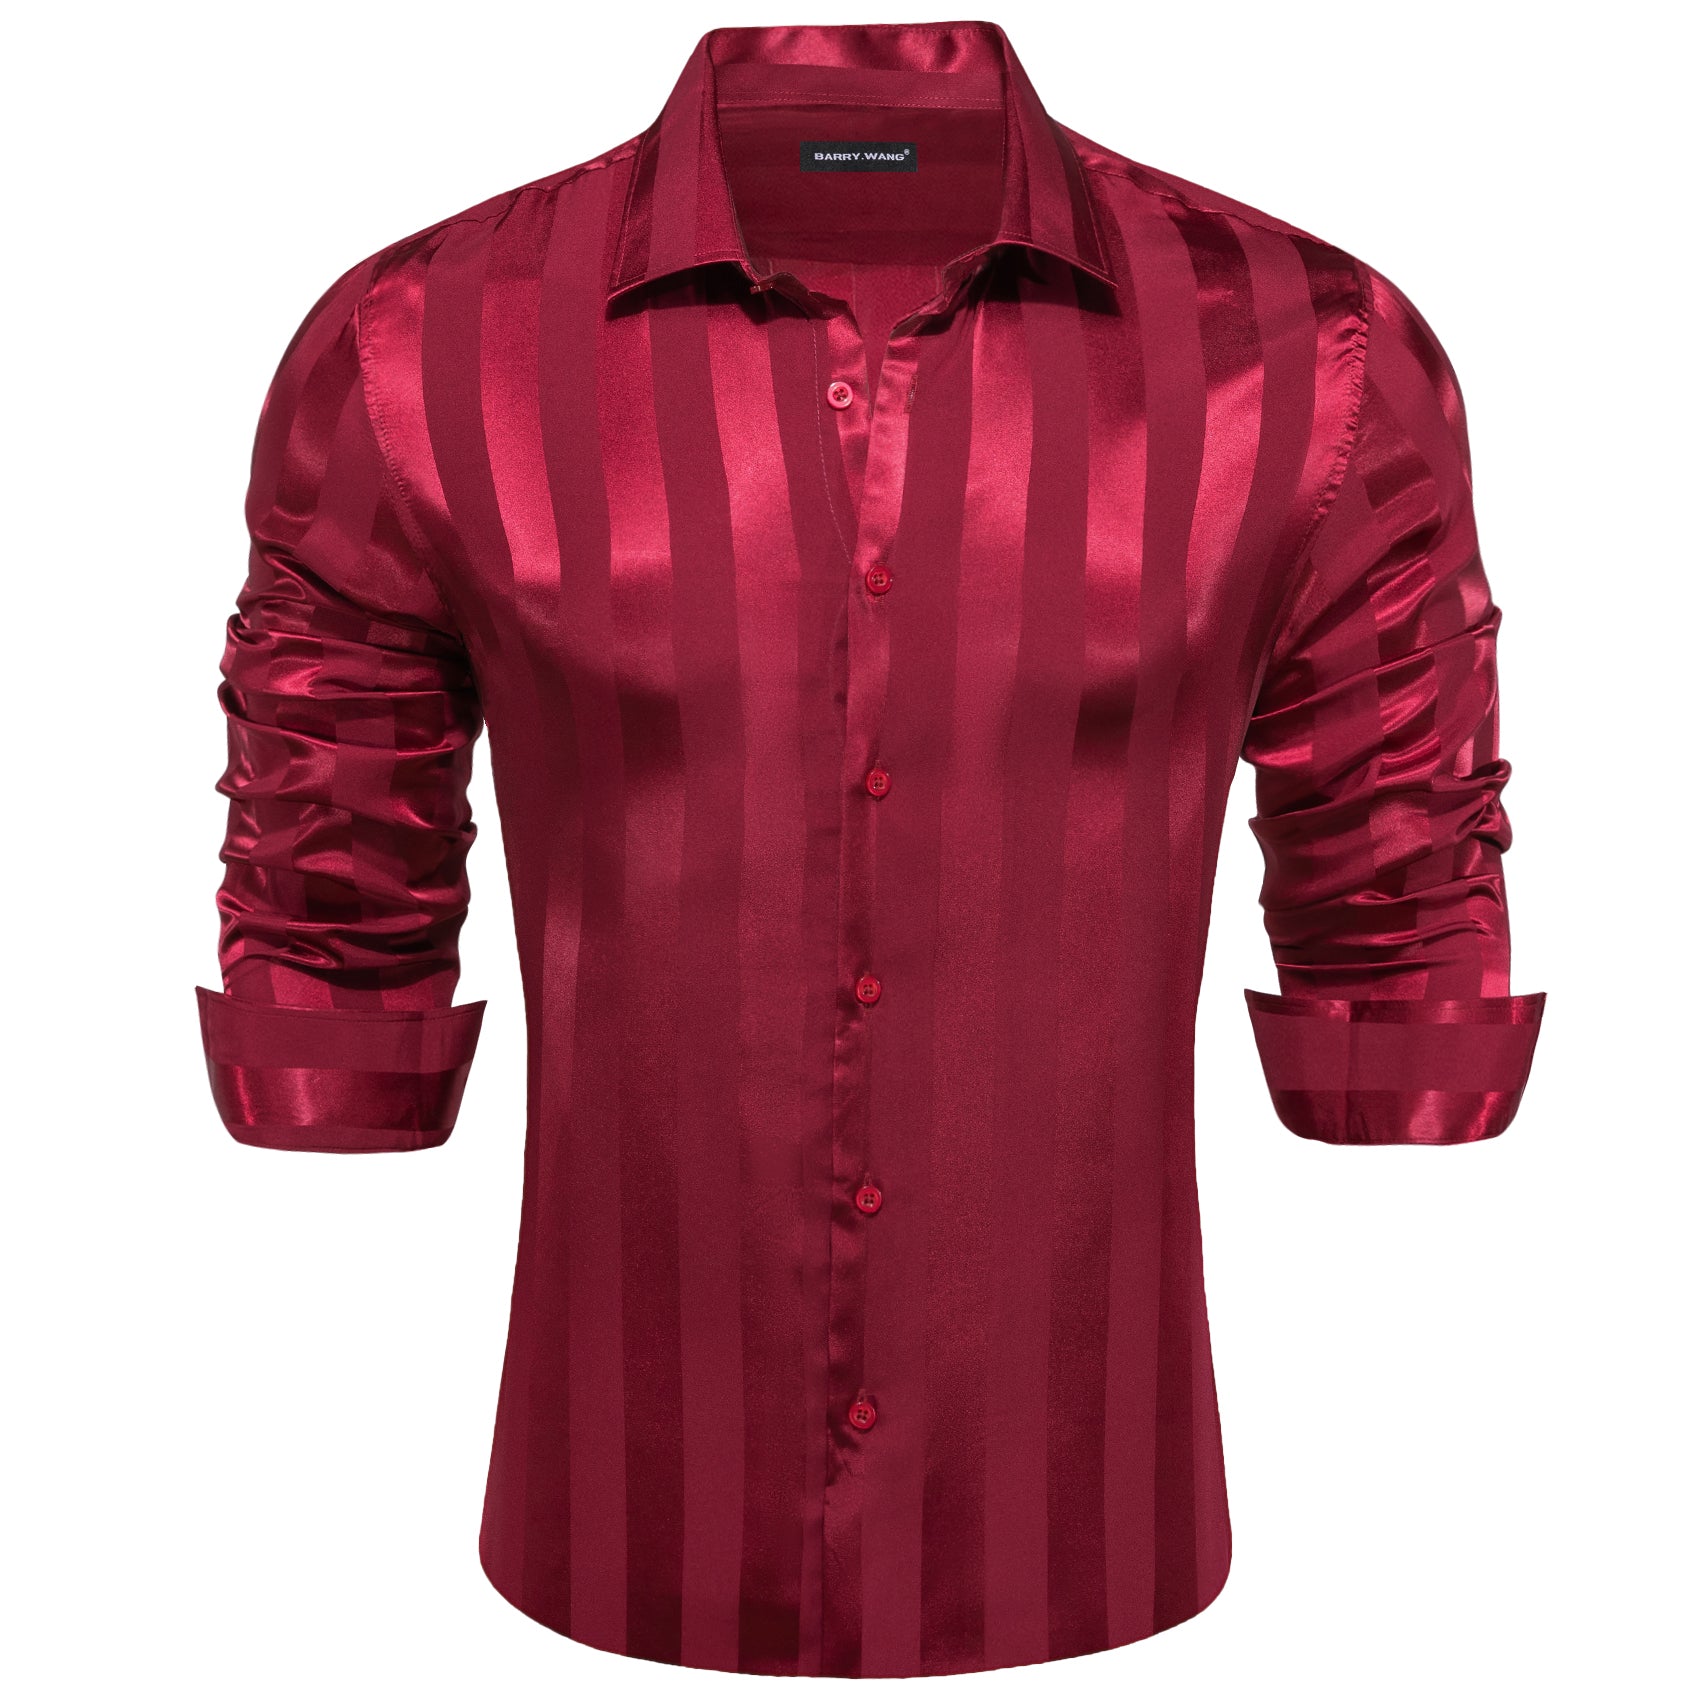 Barry.wang Dark Red Striped Silk Men's Shirt